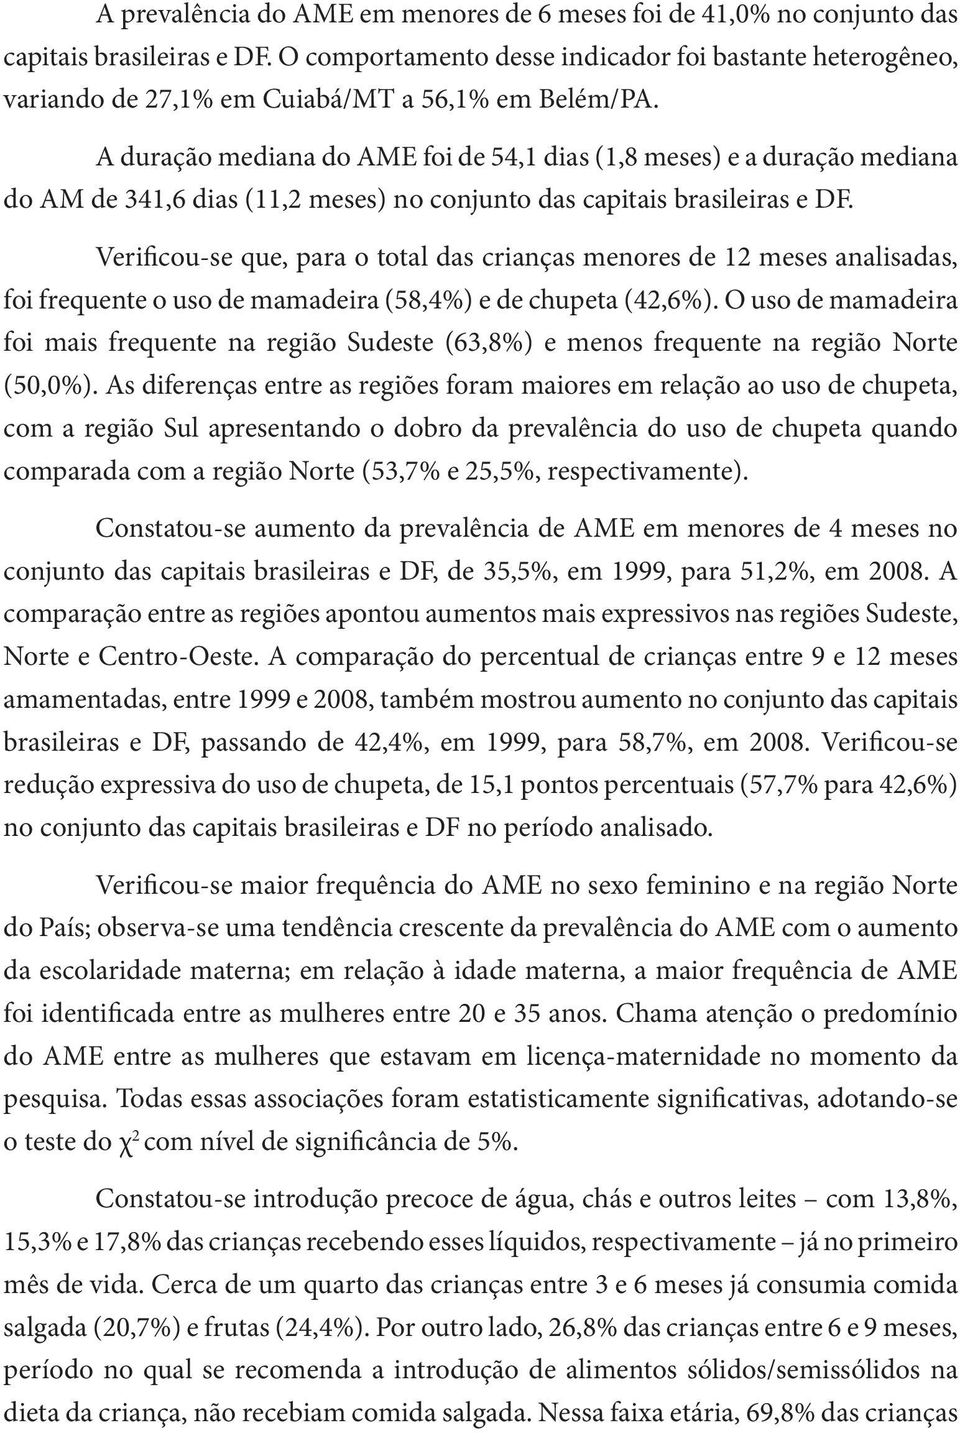 A duração mediana do AME foi de 54,1 dias (1,8 meses) e a duração mediana do AM de 341,6 dias (11,2 meses) no conjunto das capitais brasileiras e DF.